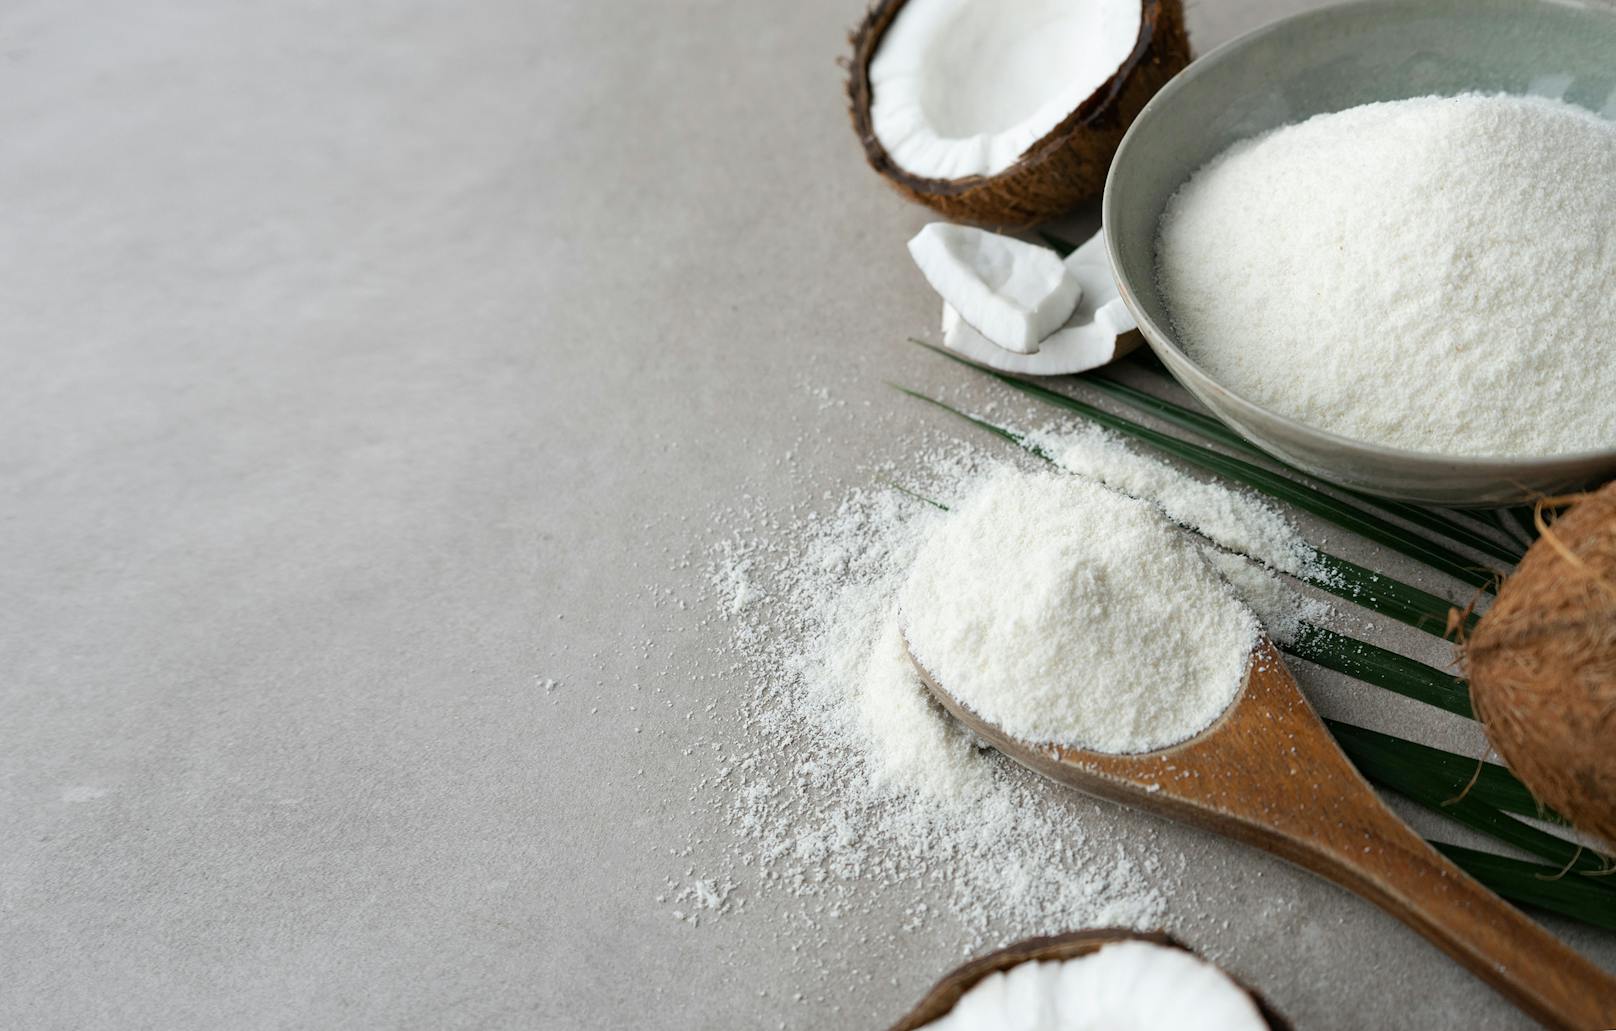 Das süßliche Mehl mit leichter Kokos-Note passt perfekt in Kuchen, Muffins und Brot. Kokosmehl kannst du auch selber herstellen, indem du Kokosflocken- oder Raspeln feiner mahlst.